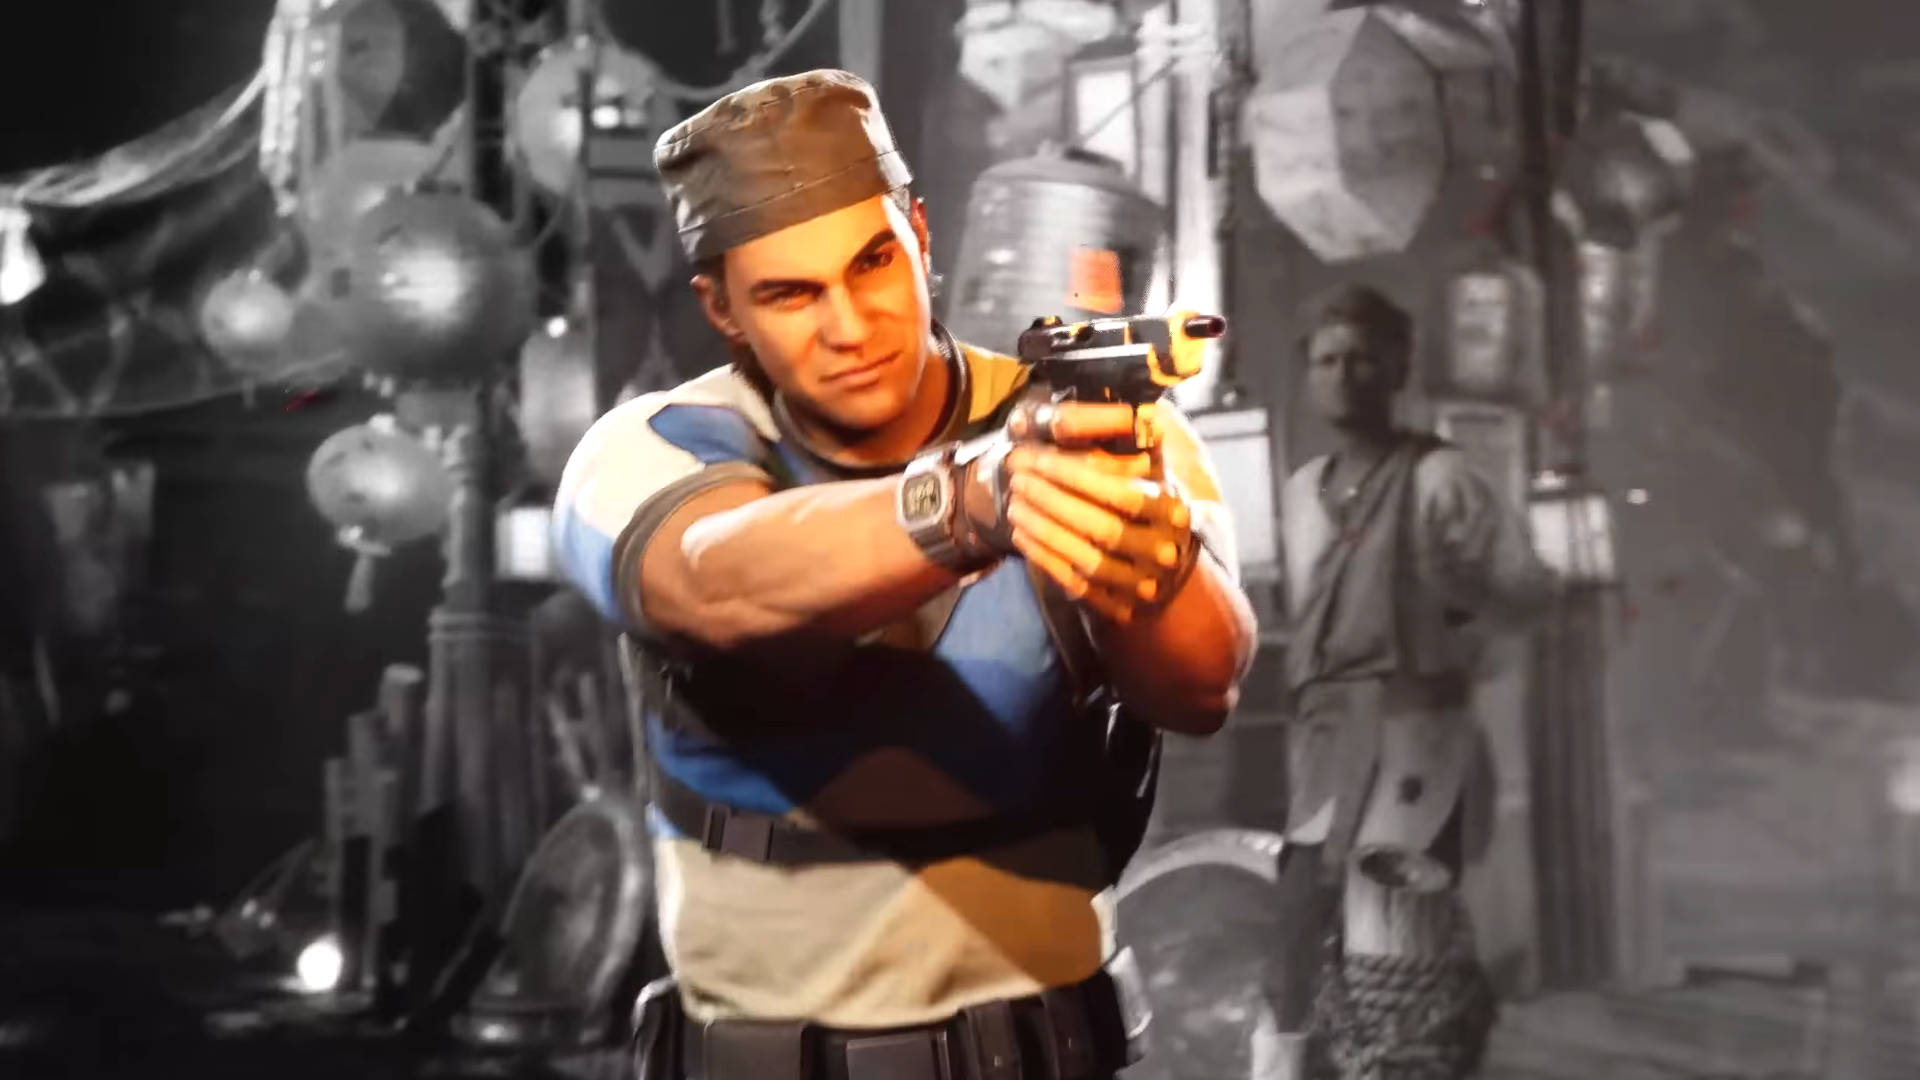 Press The Buttons: Mortal Kombat Creator Wants Gears Of War Star As DLC